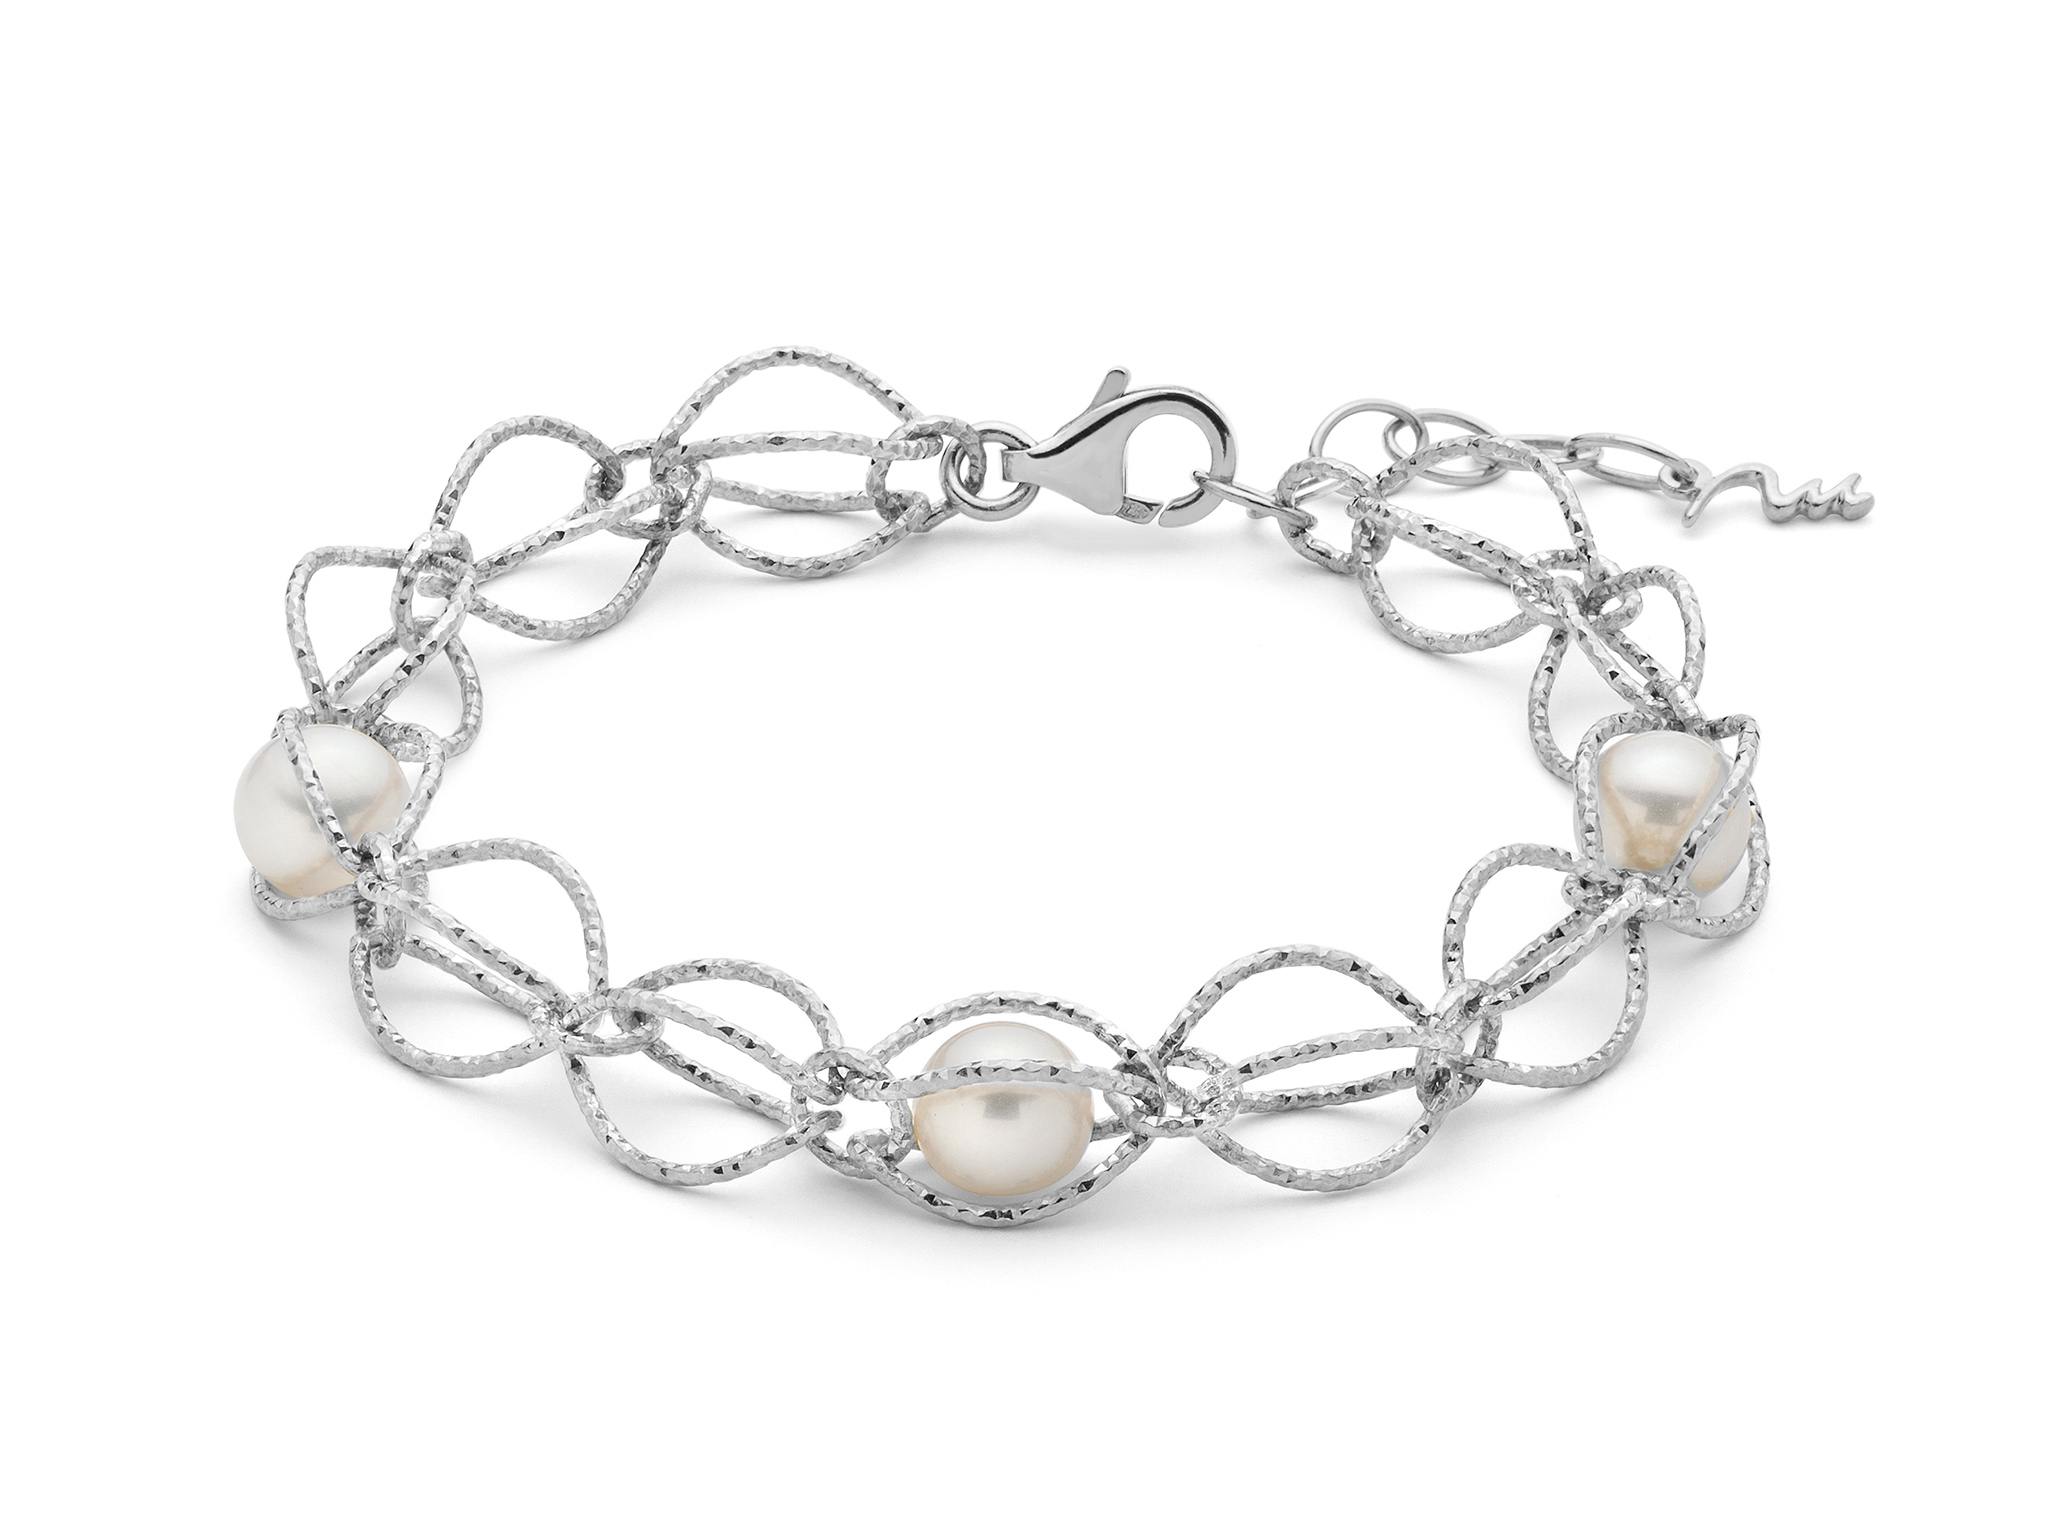 Bracciale in argento con maglia intrecciata e perle vere - PBR3345G